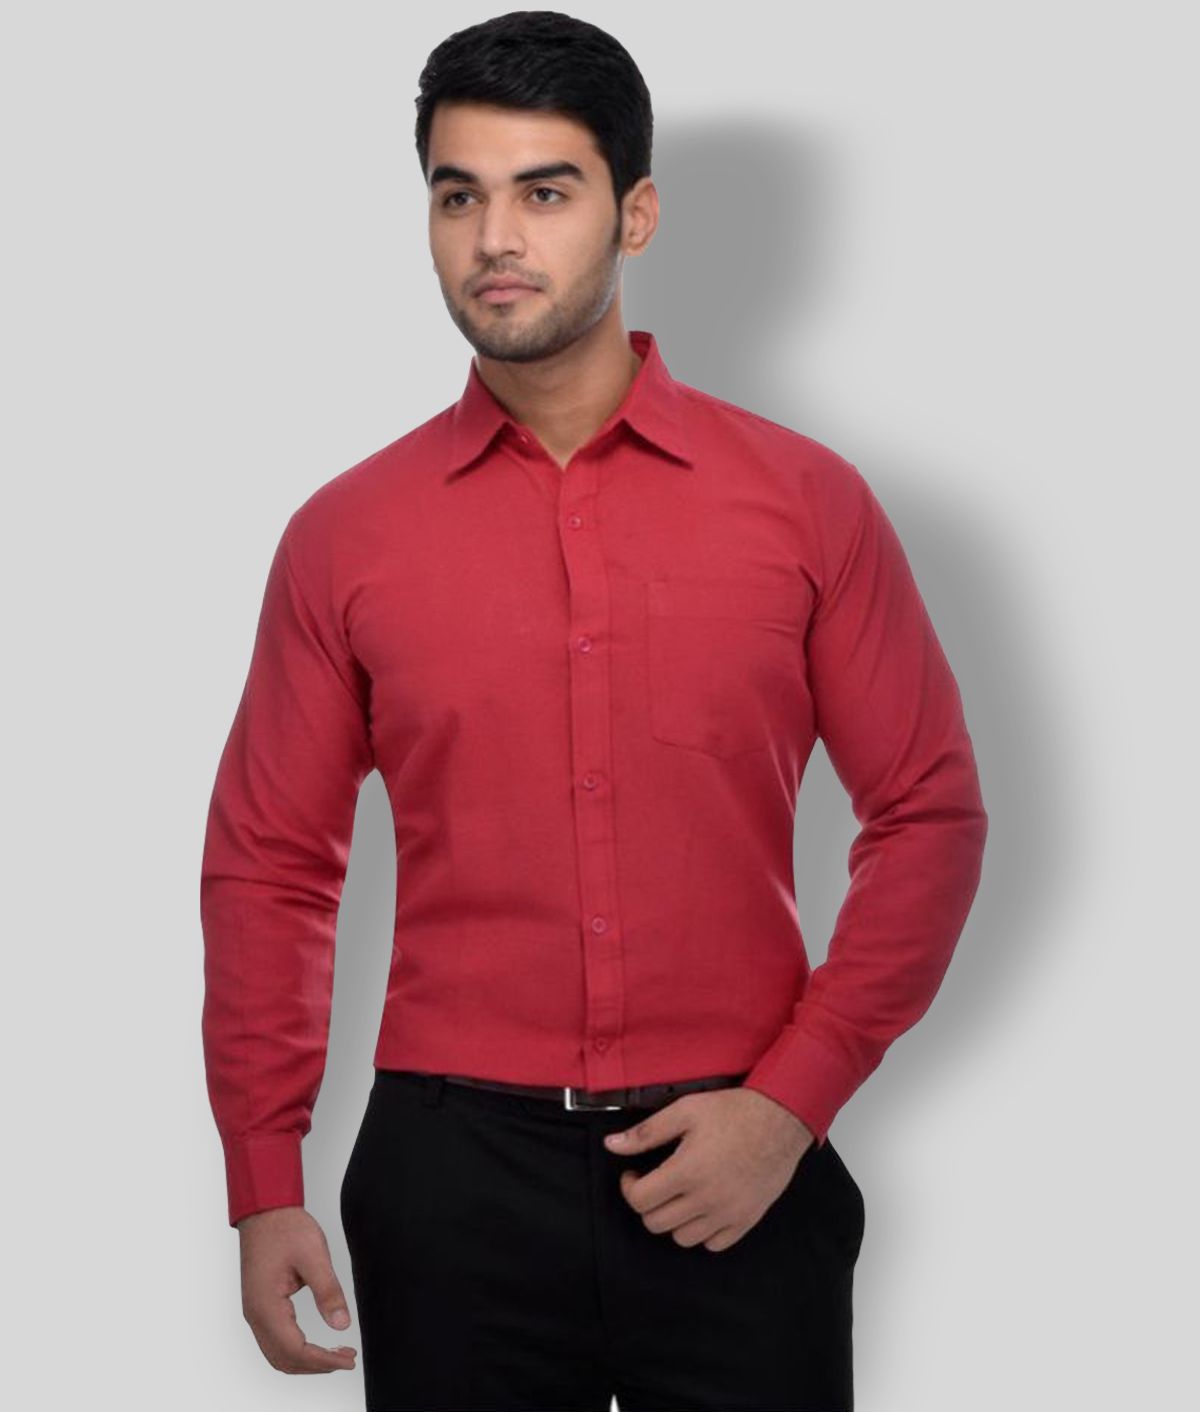     			DESHBANDHU DBK - Red Cotton Regular Fit Men's Formal Shirt (Pack of 1)